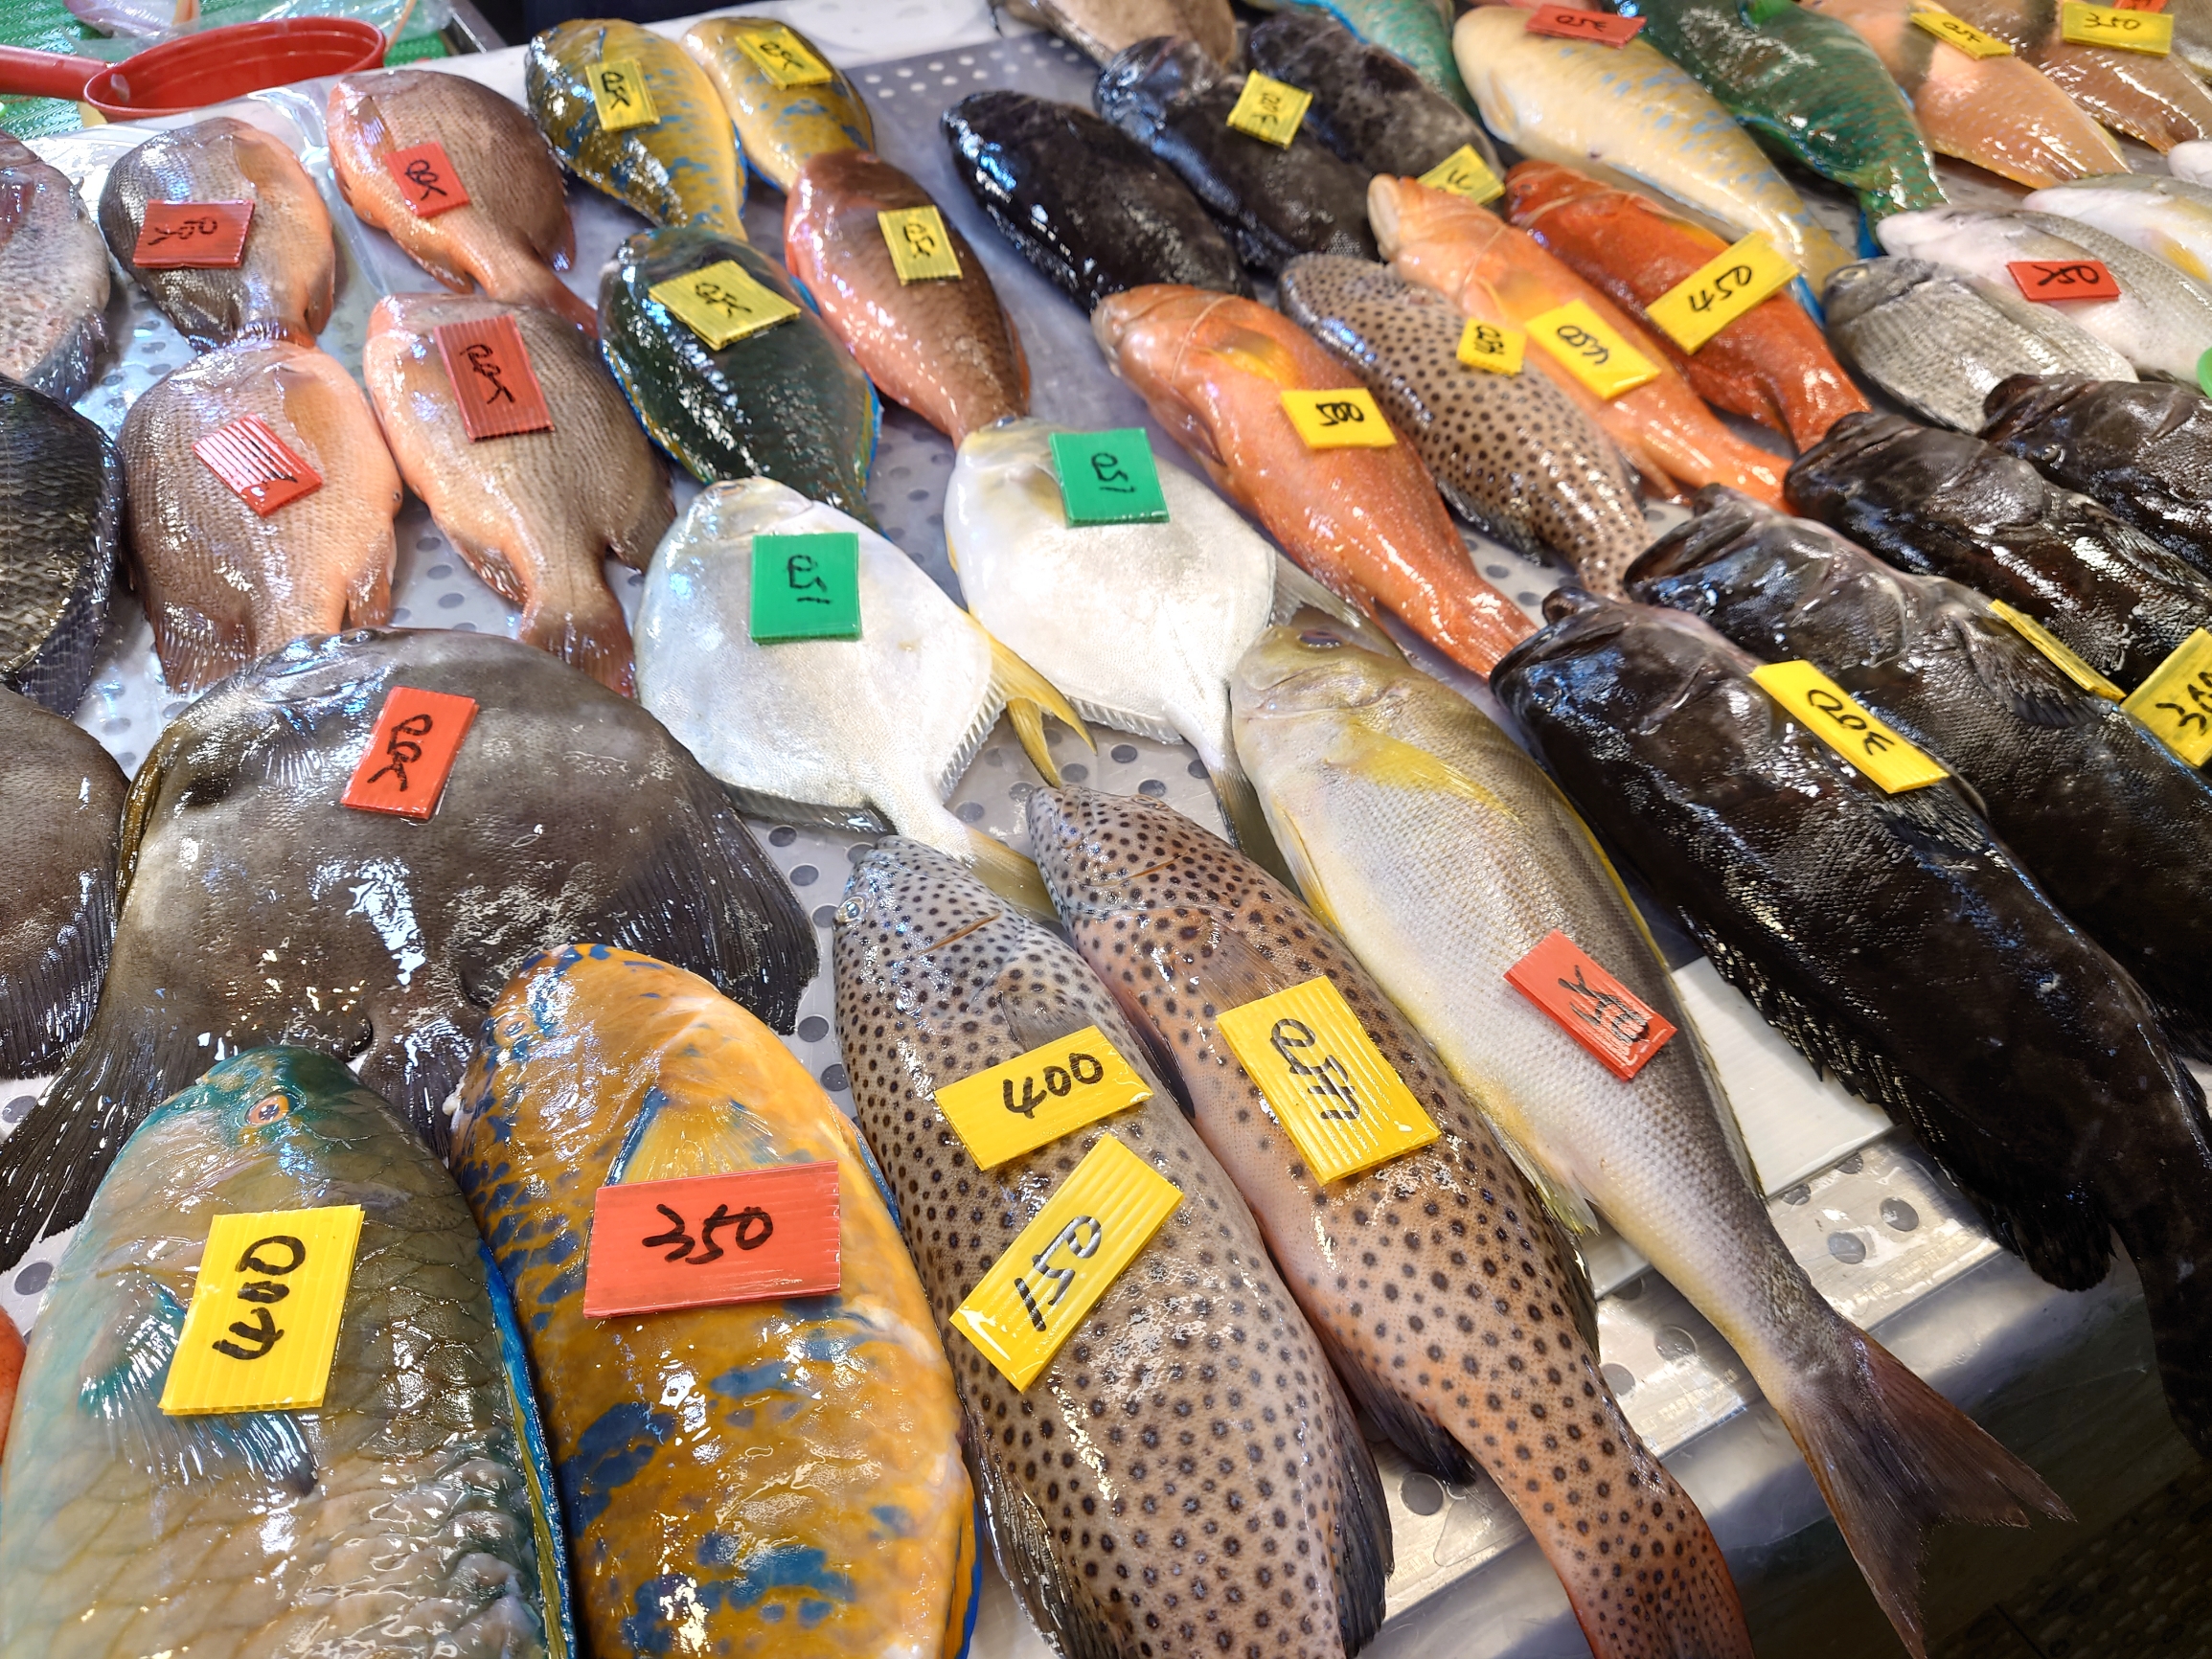 东港华侨市场…南臺灣最大的海鮮觀光市場！各式各樣的魚類…海鮮…讓人眼花繚亂!熱愛海鮮美食的夥伴…一定